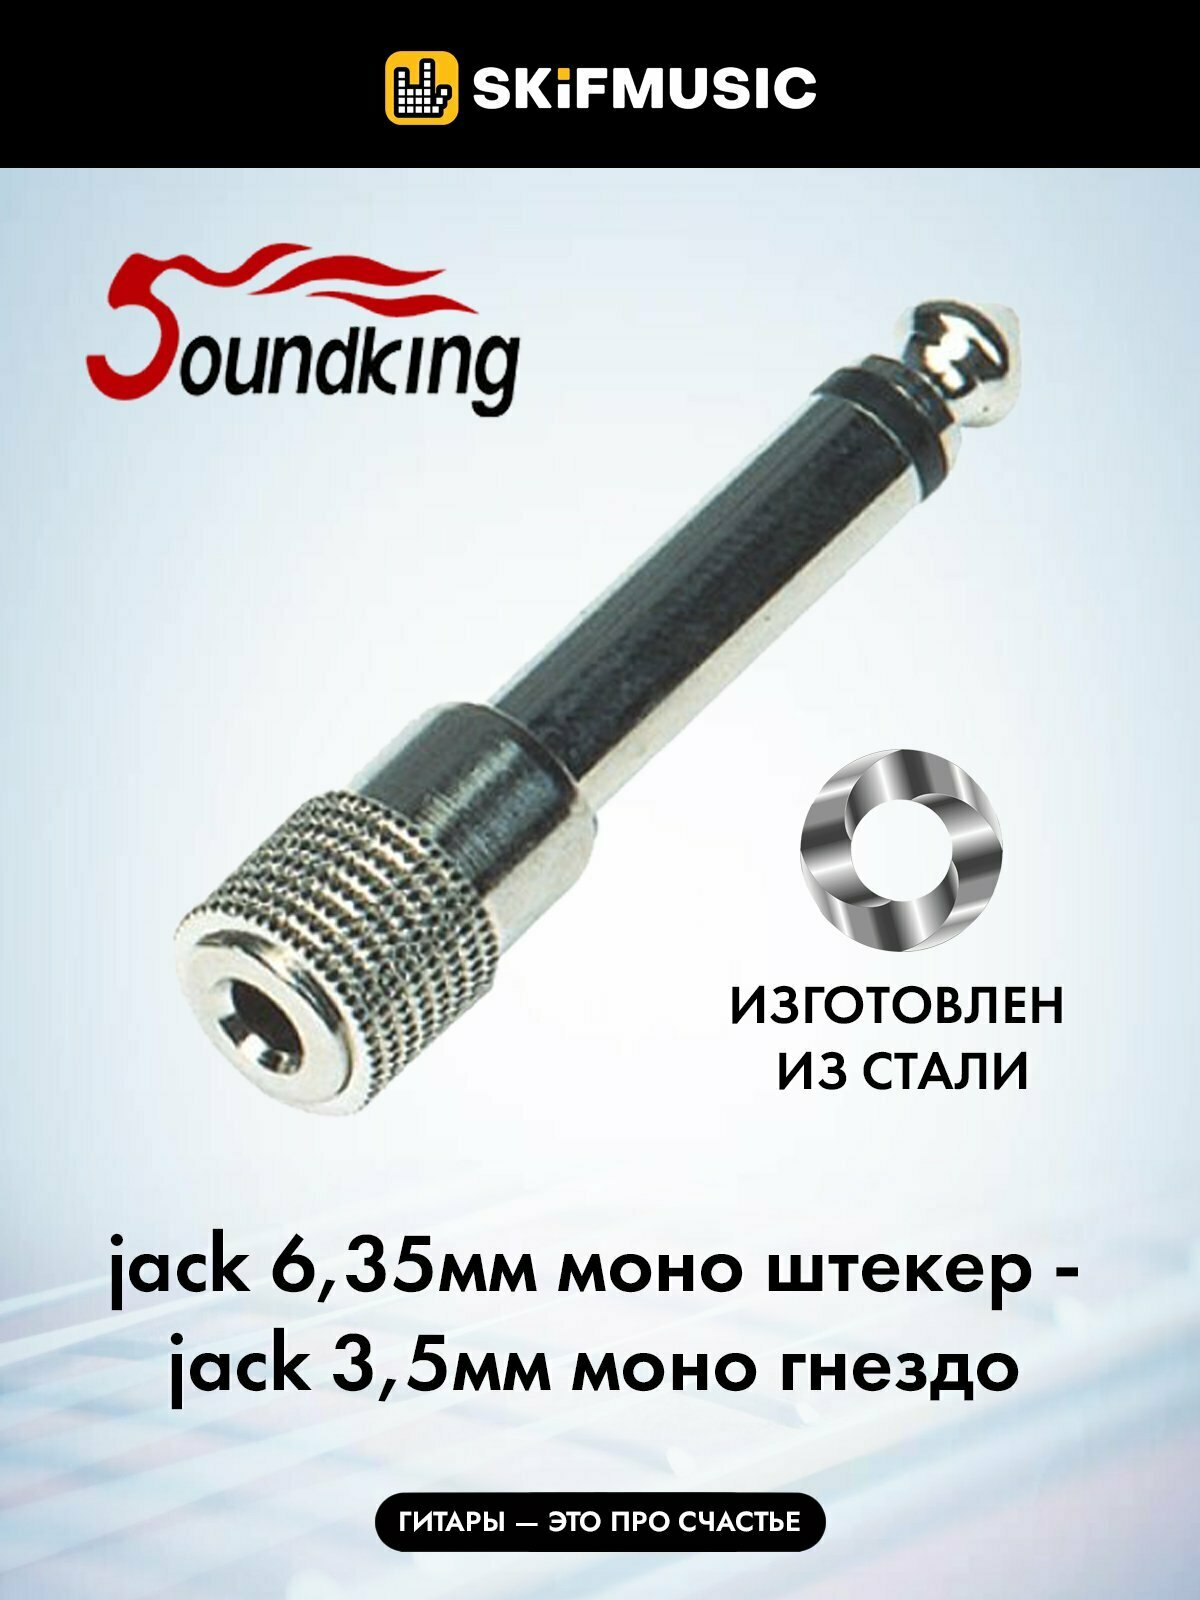 Переходник Soundking CC308-1 6,35мм моно штекер - 3,5мм моно гнездо, Soundking (Саундкинг)